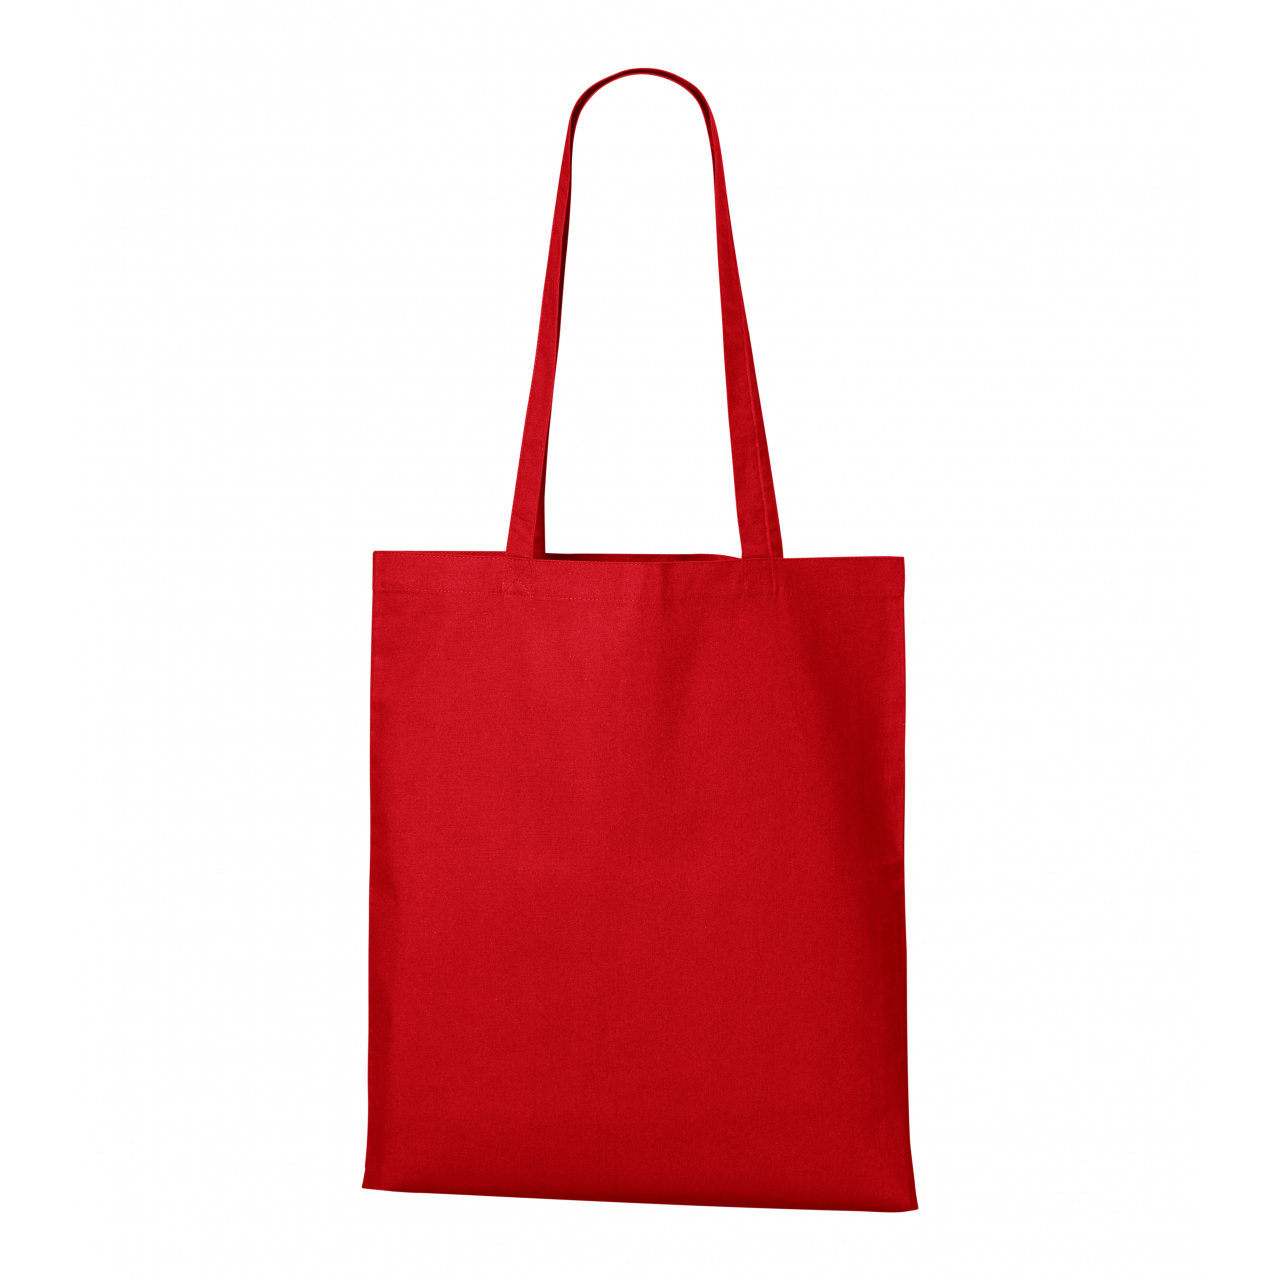 Nákupní taška Malfini Shopper - červená